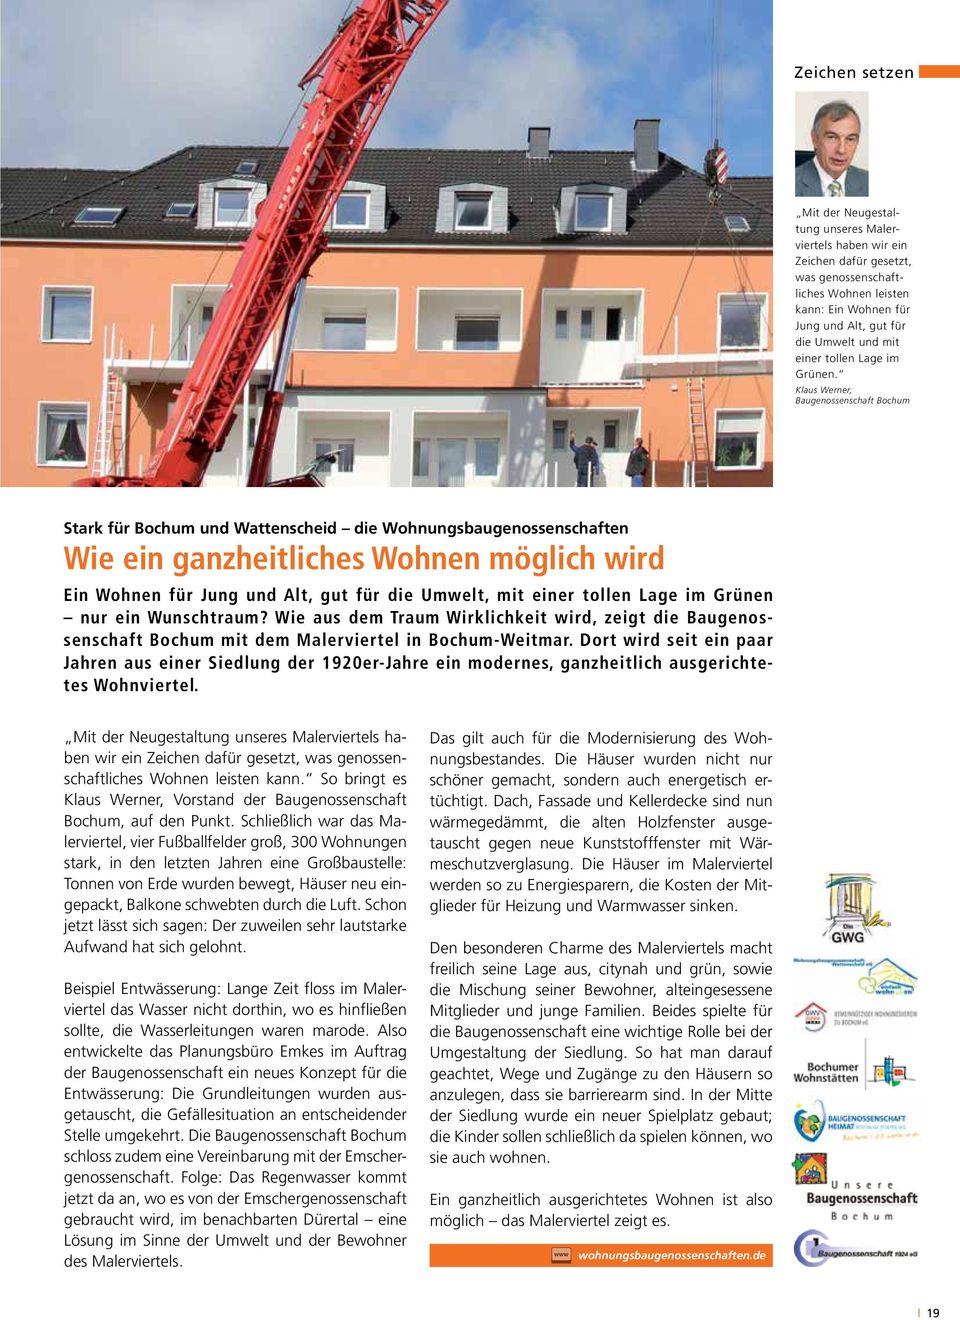 Klaus Werner, Baugenossenschaft Bochum Stark für Bochum und Wattenscheid die Wohnungsbaugenossenschaften Wie ein ganzheitliches Wohnen möglich wird Ein Wohnen für Jung und Alt, gut für die Umwelt,